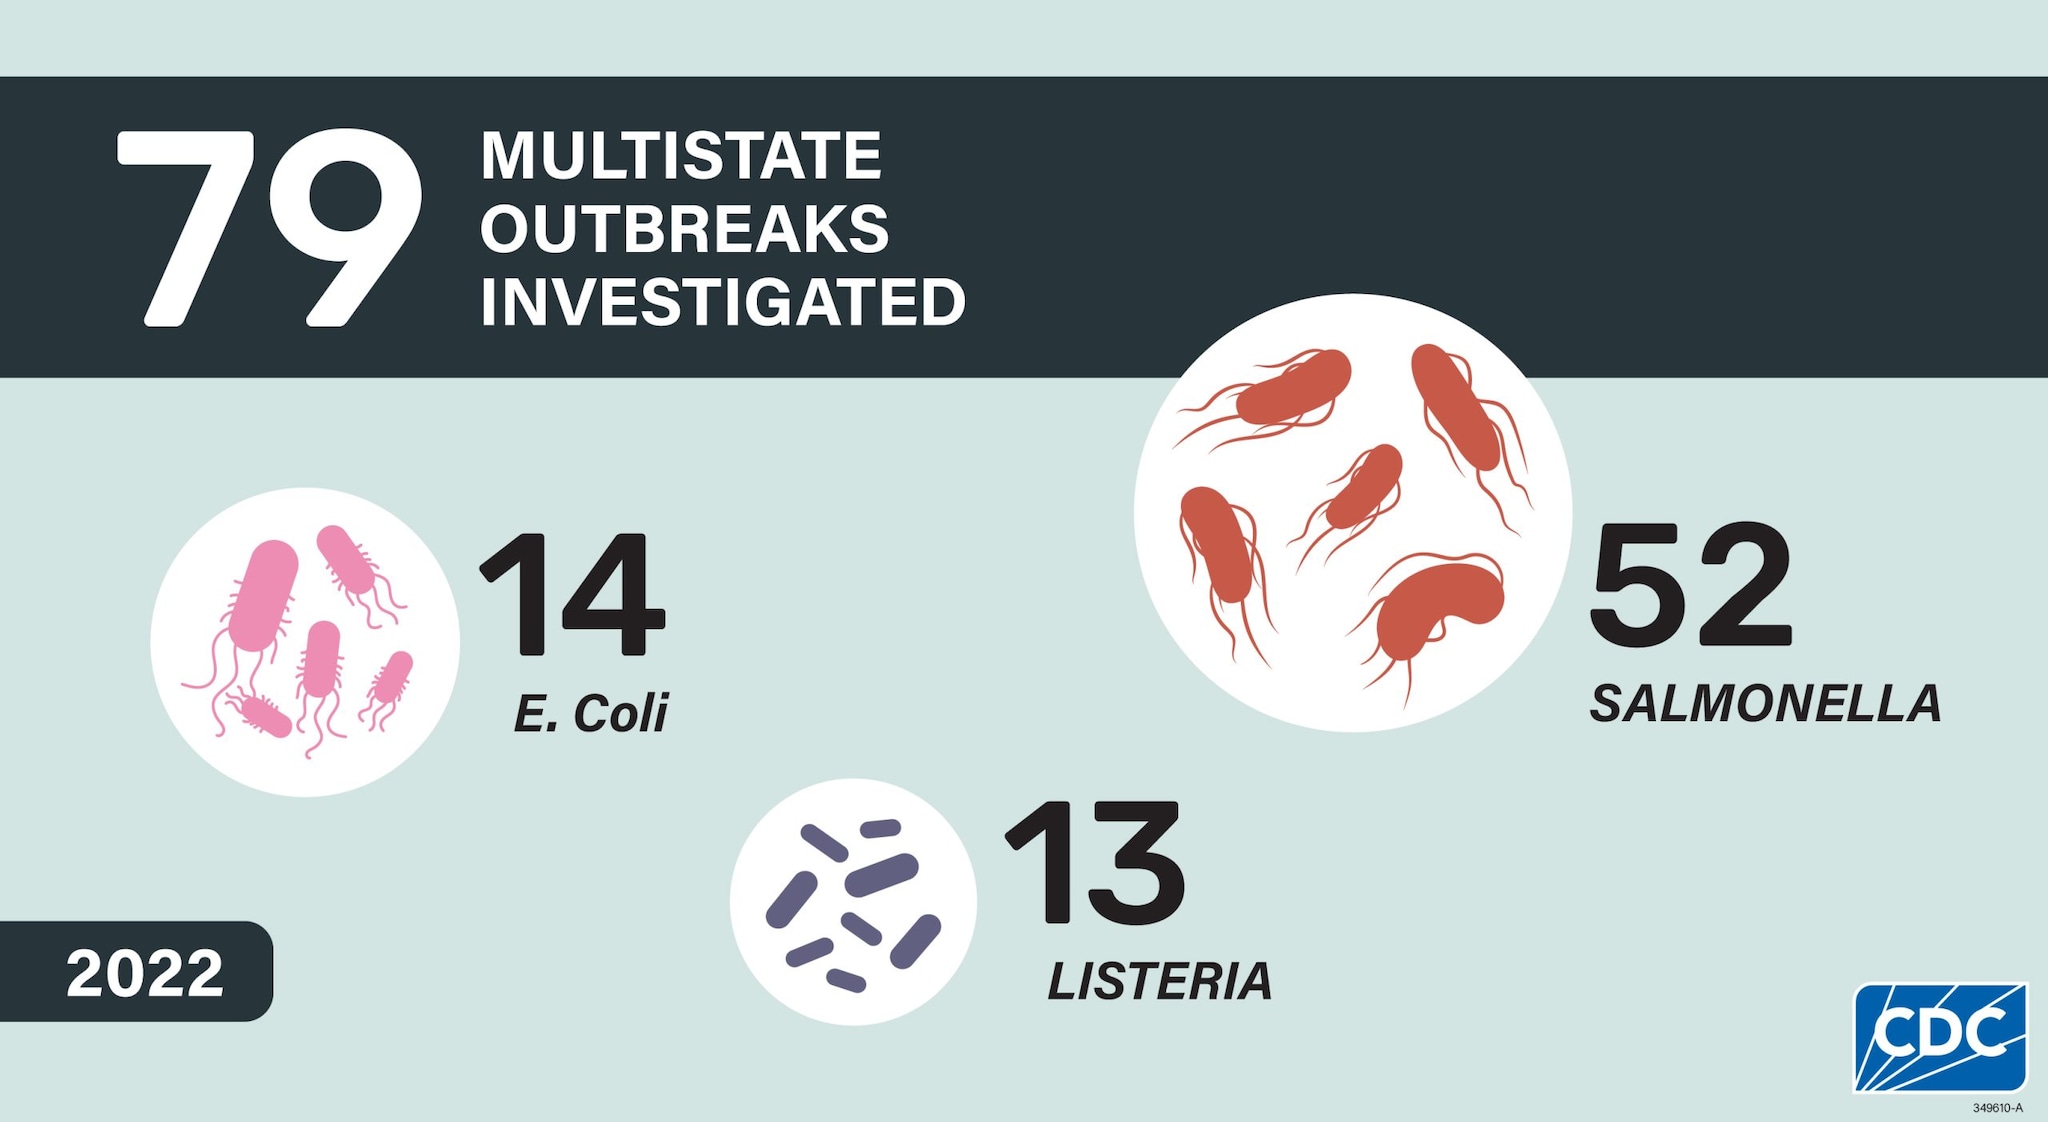 79 multistate outbreaks investigated (14 E.coli outbreaks, 13 Listeria outbreaks and 52 Salmonella outbreaks)